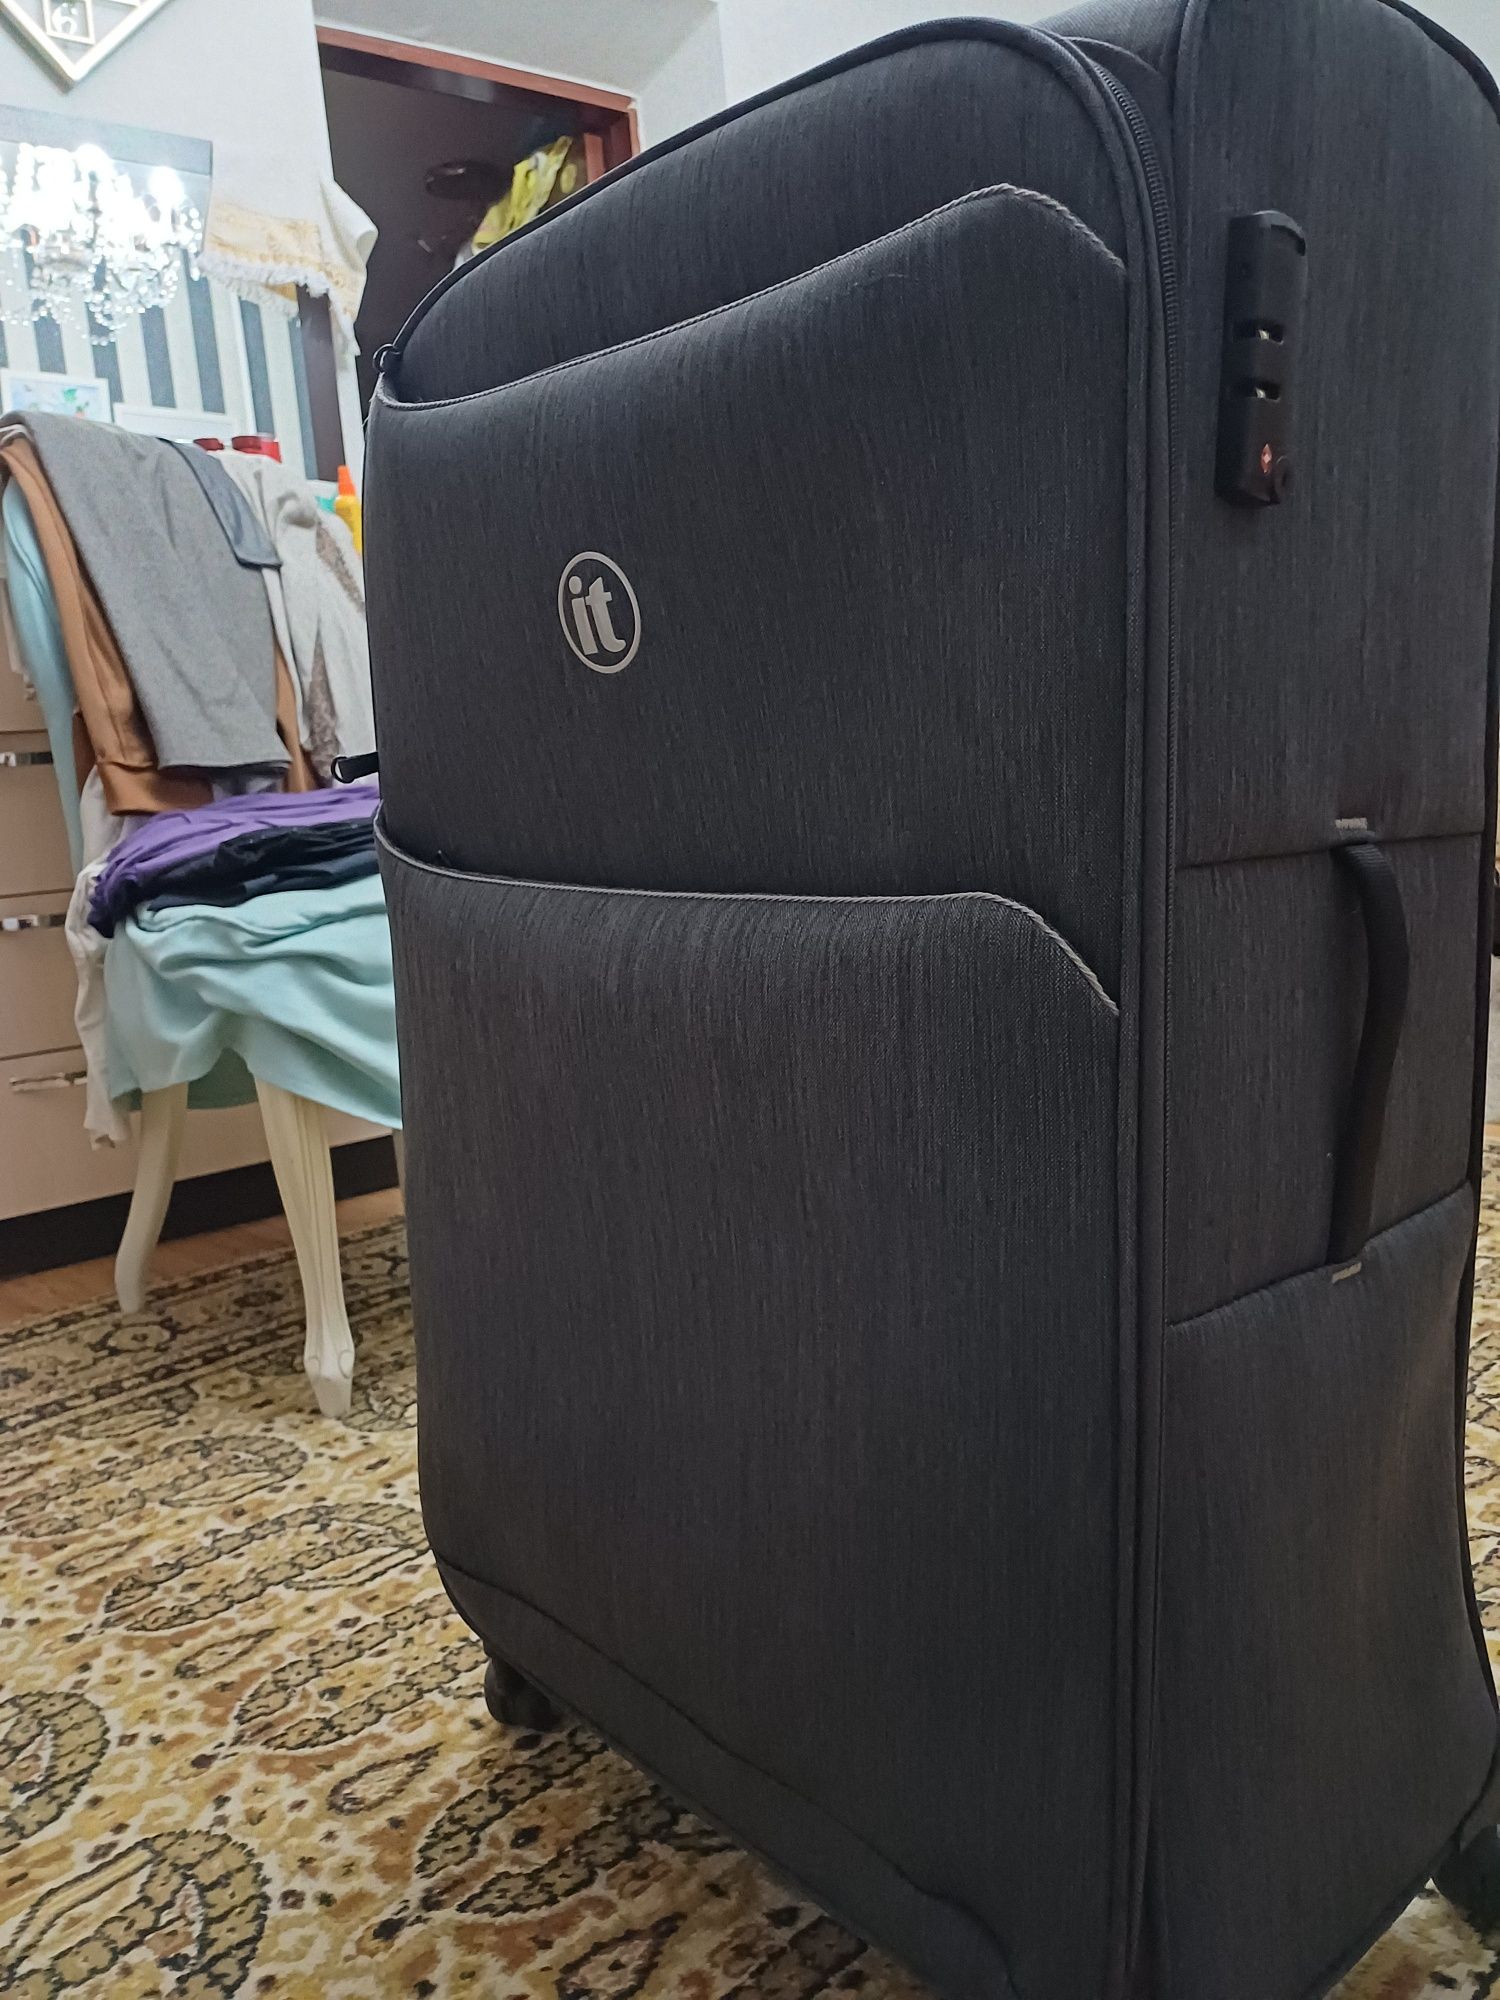 Продам чемодан купленный в Лондоне